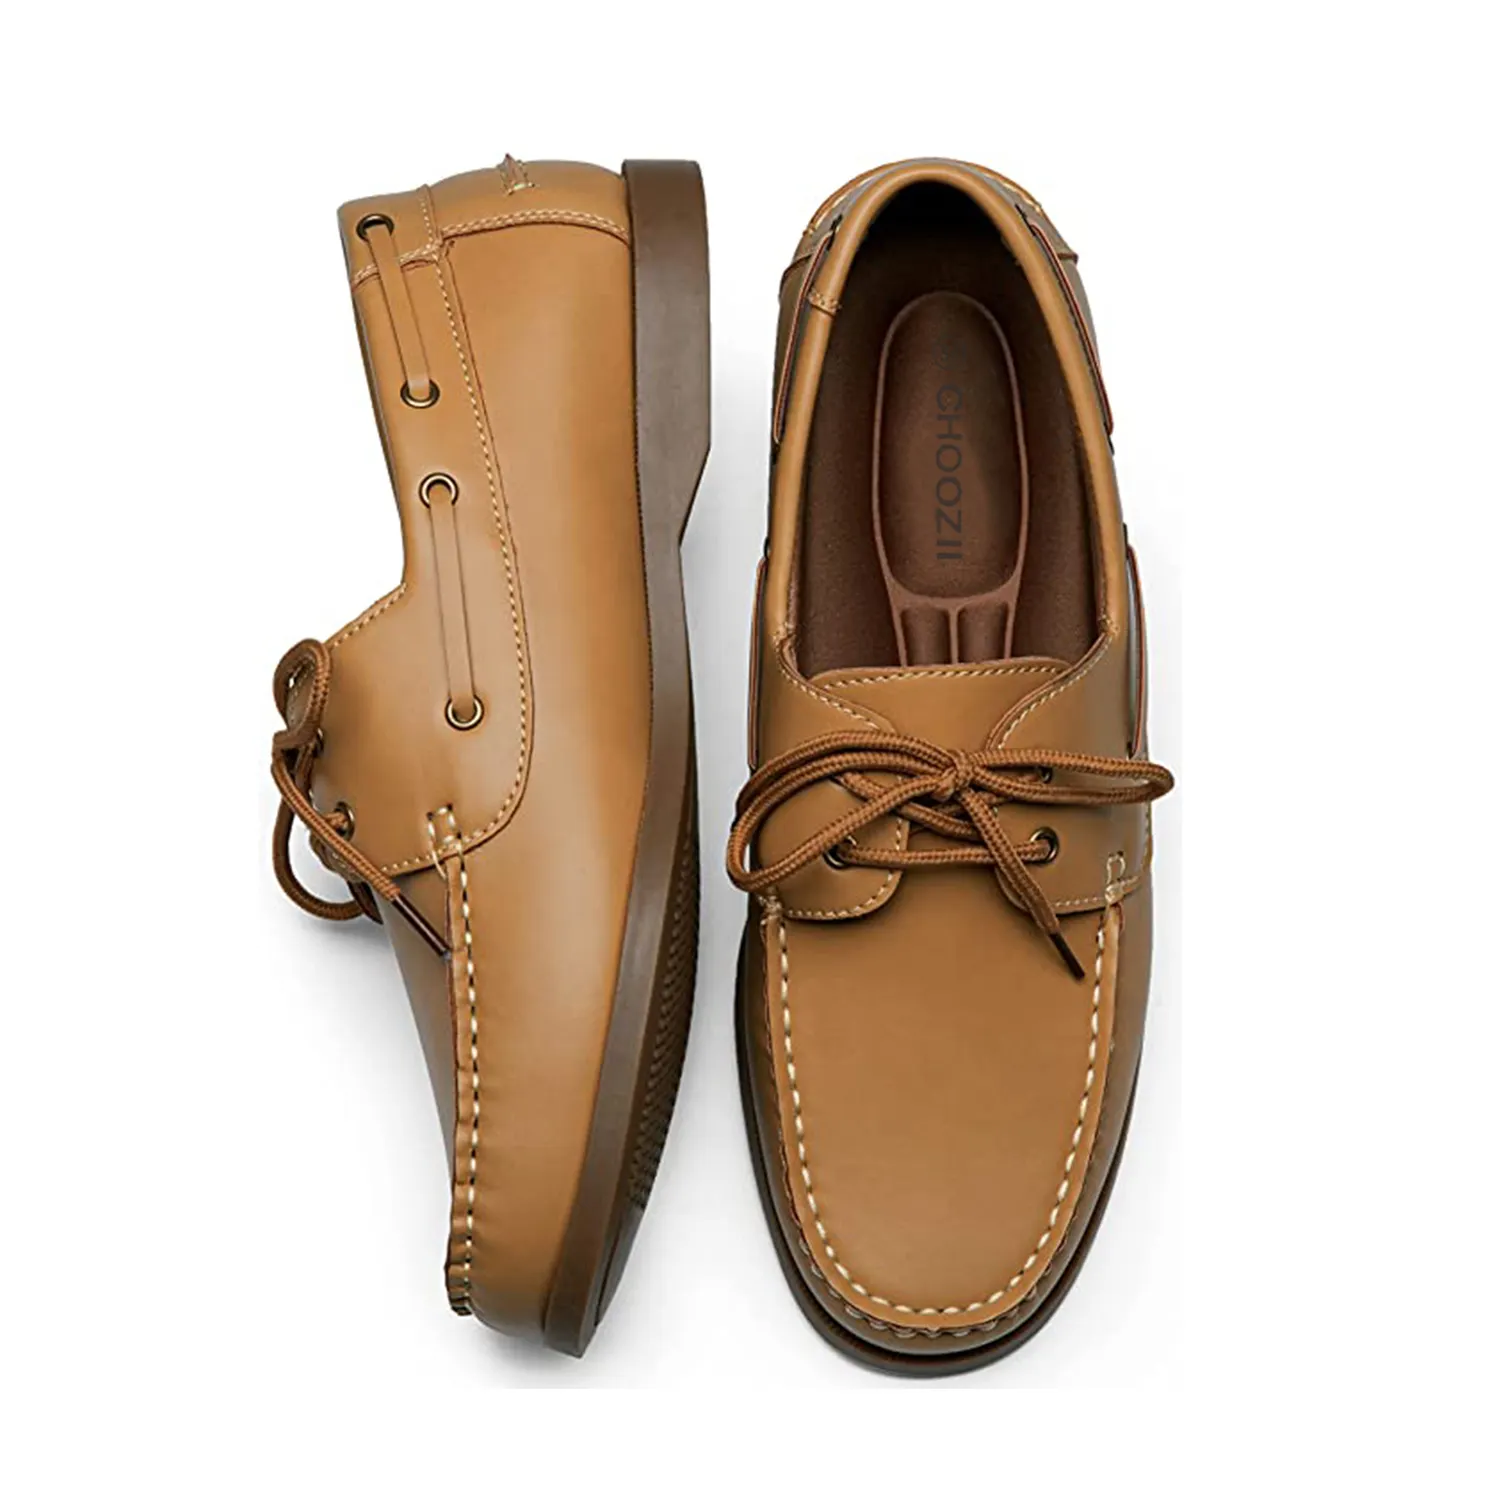 Adam rahat dantel up loafer'lar yürüyüş ayakkabısı kemer desteği ile rahat kahverengi deri erkek otantik orijinal 2-Eye tekne ayakkabı